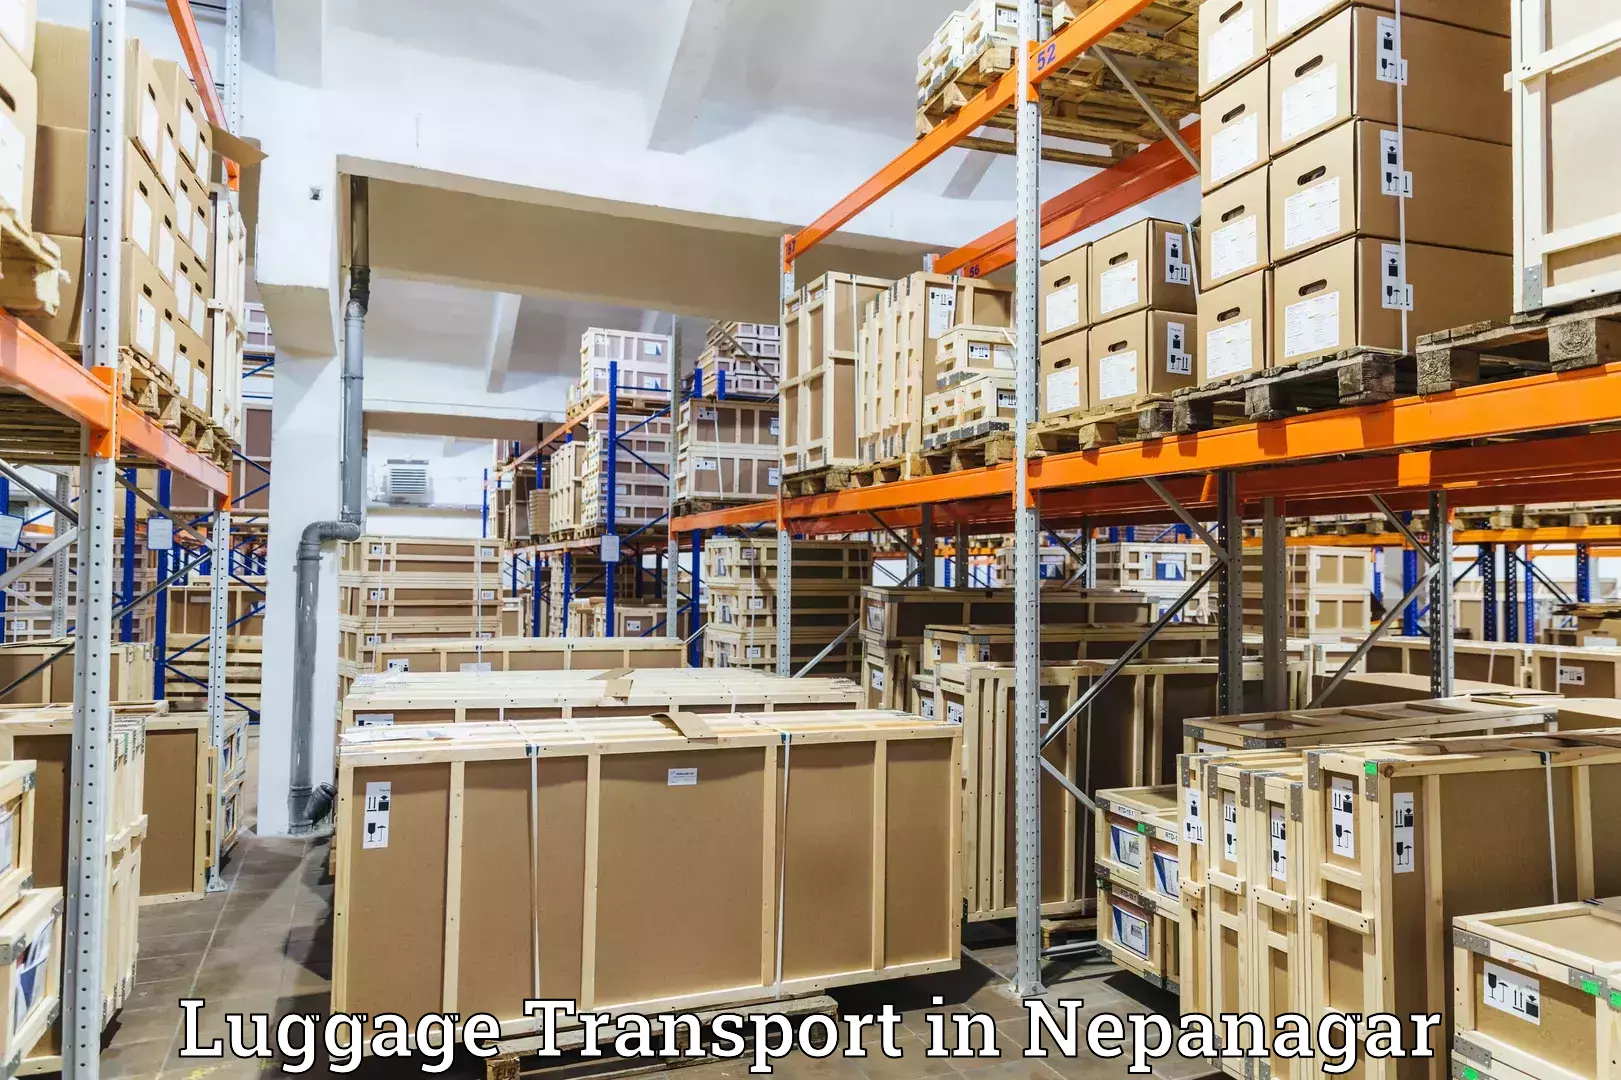 Baggage transport innovation in Nepanagar